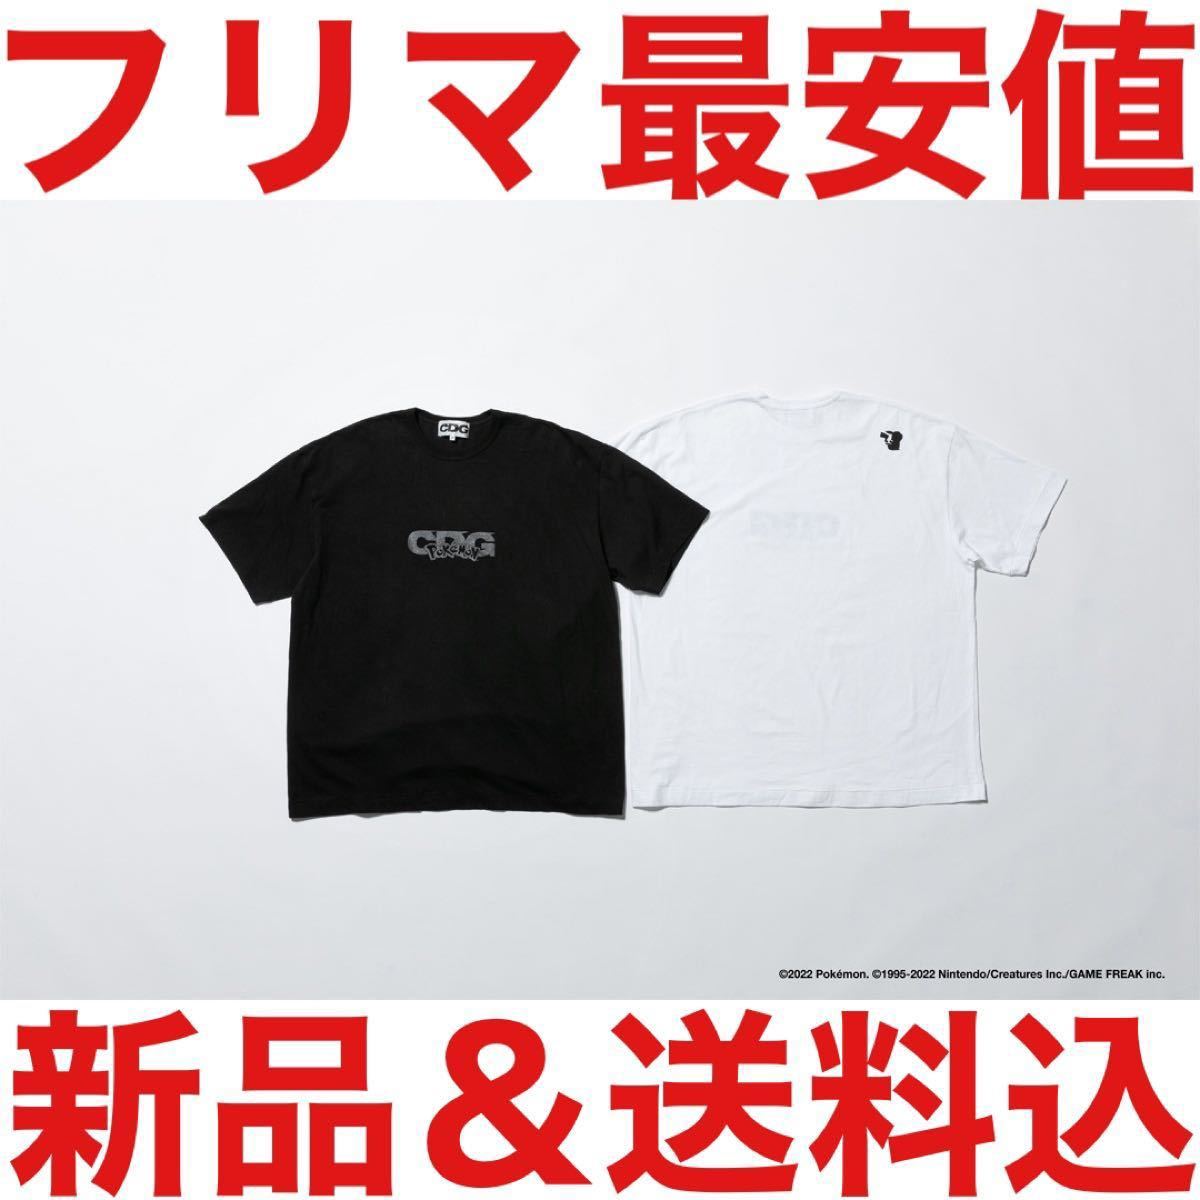 新品 限定 COMPLEXCON VERDY VICK Tシャツ 黒 L コンプレックスコン